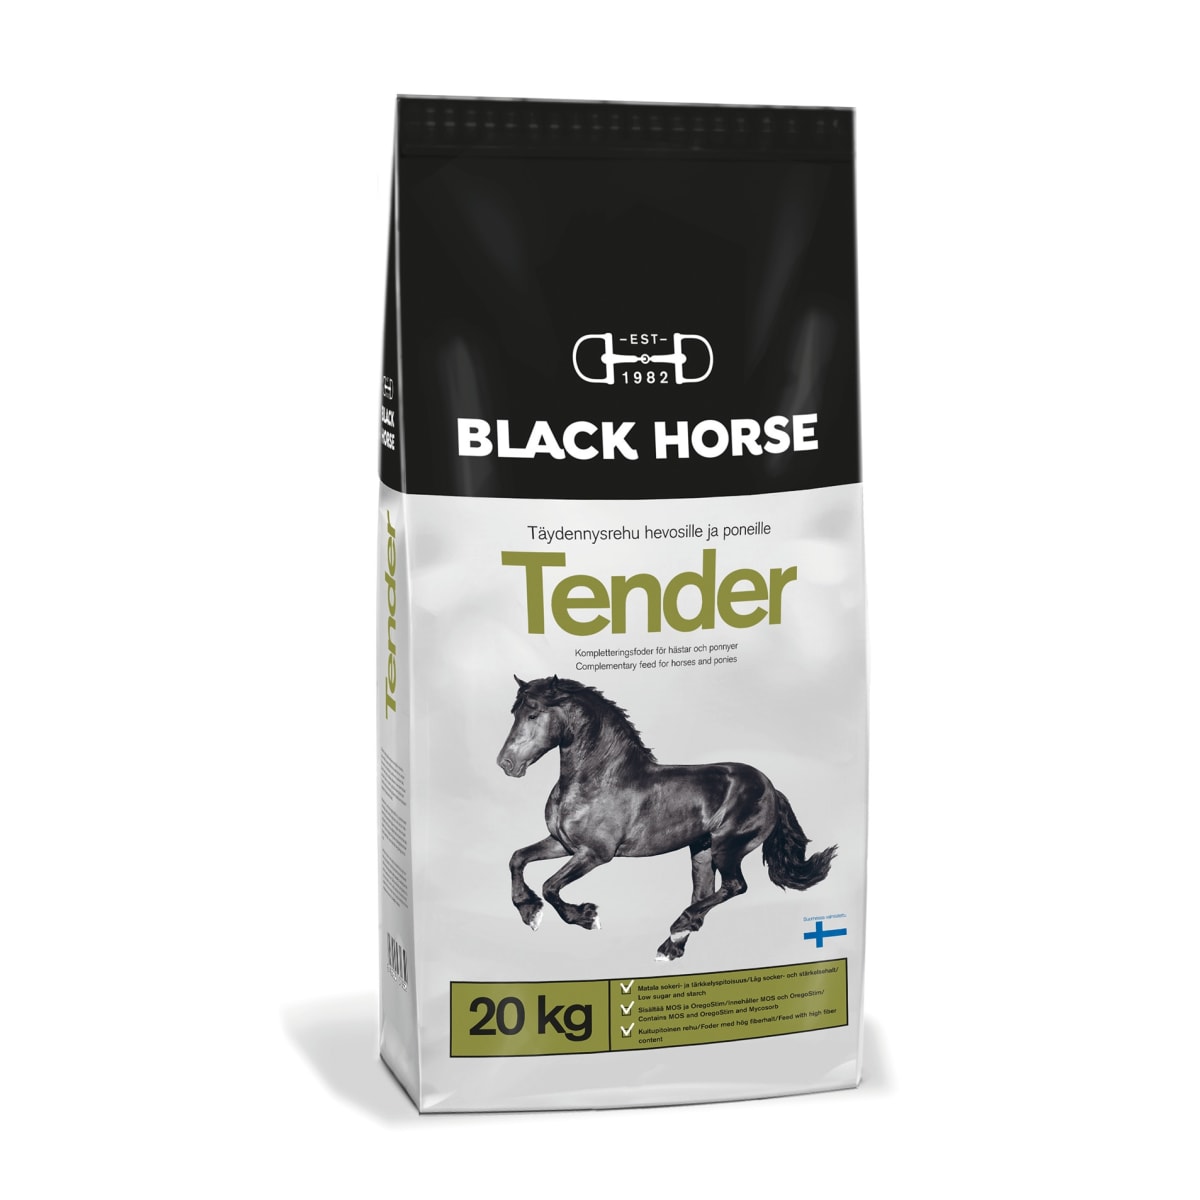 Black Horse Tender 20 kg  verkkokauppa